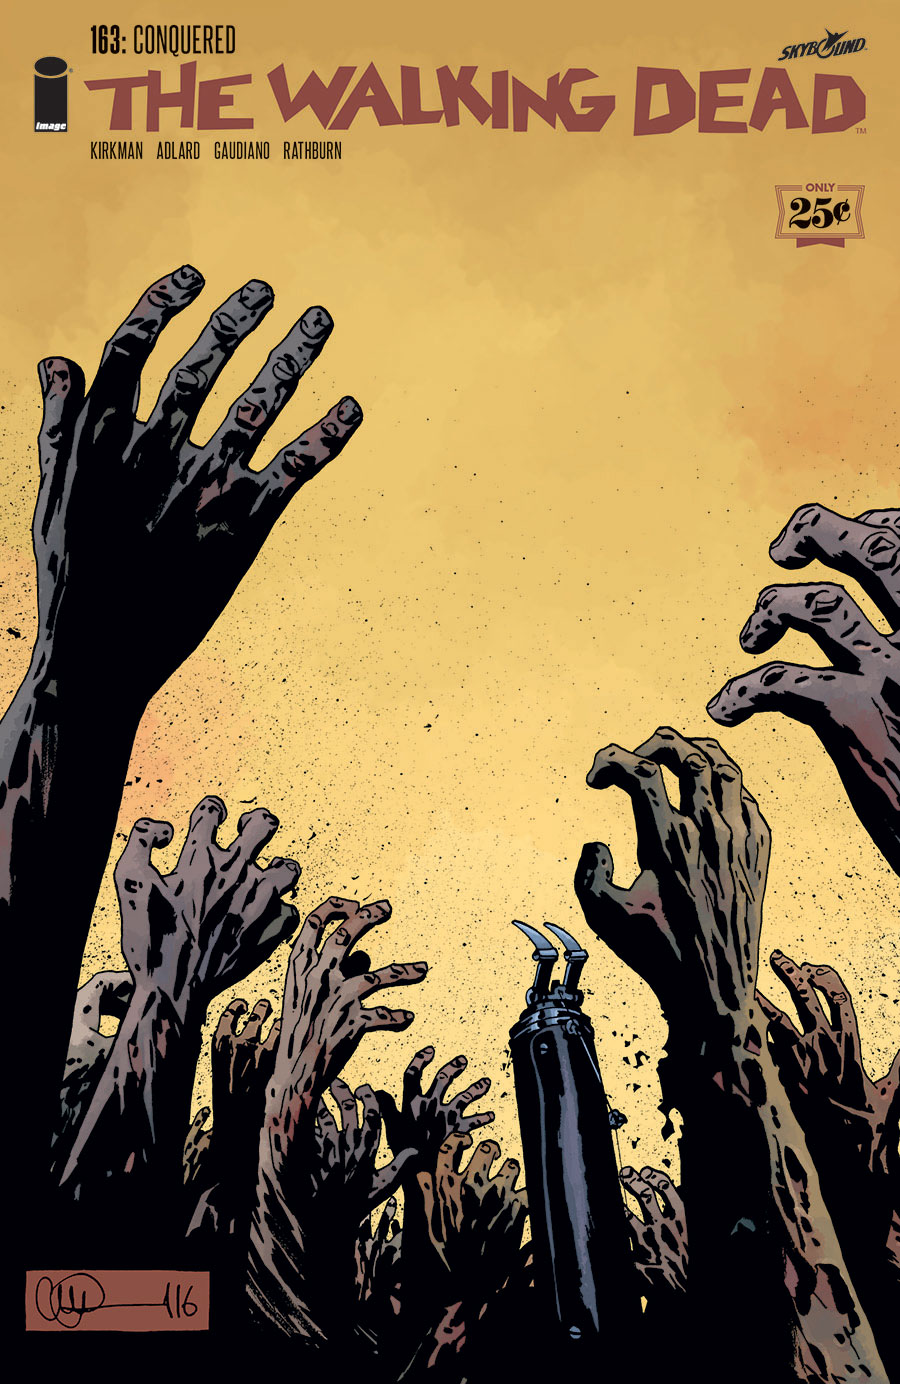 The Walking Dead 177: Capa e informações – Um Novo Comandante?